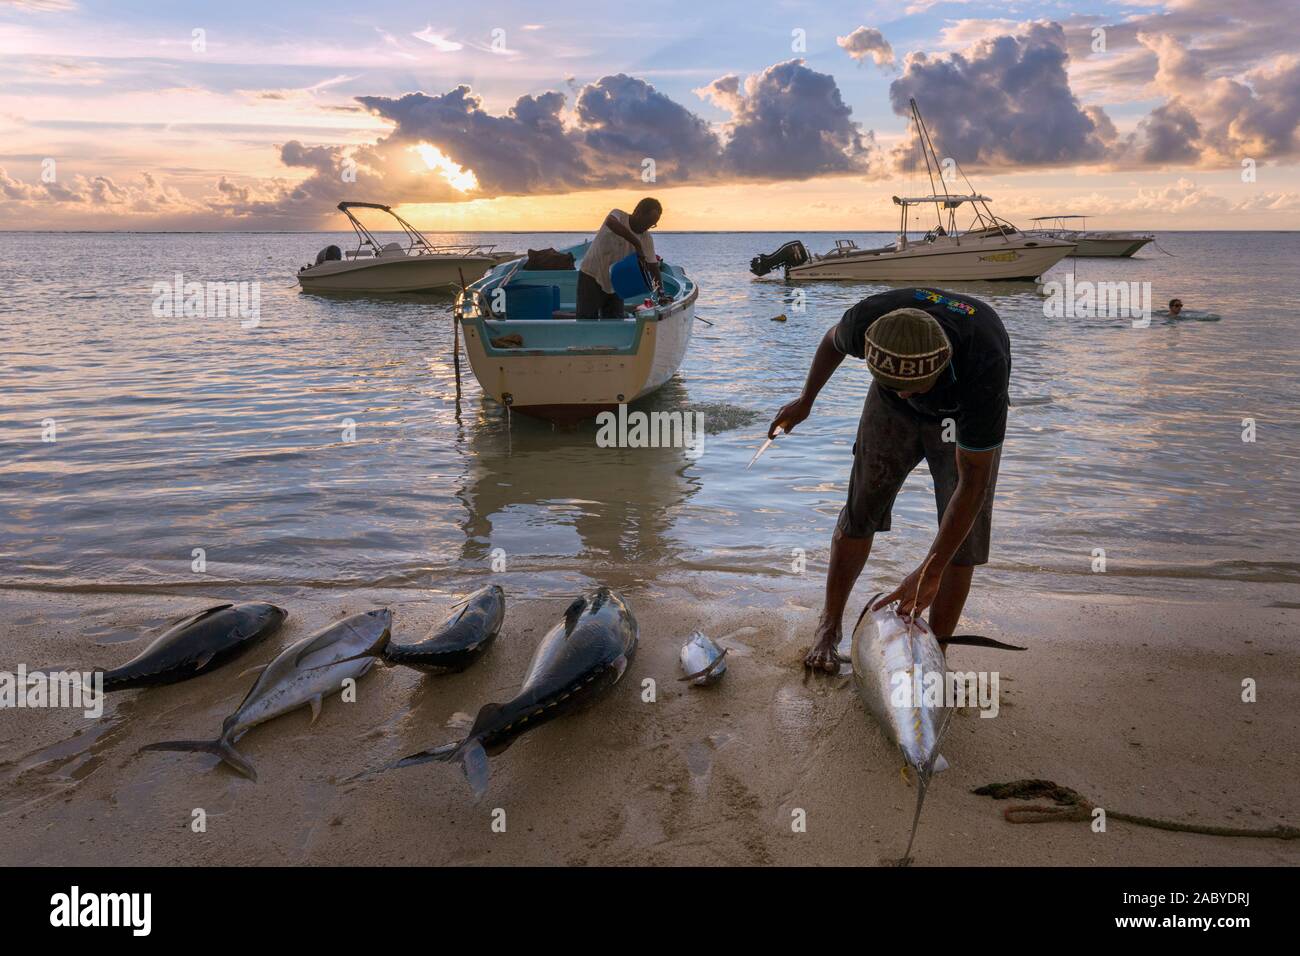 Los pescadores trabajan en sus capturas al atardecer en Riviere Noir o río negro playa, mico, Mauricio Islas Mascareñas. Foto de stock